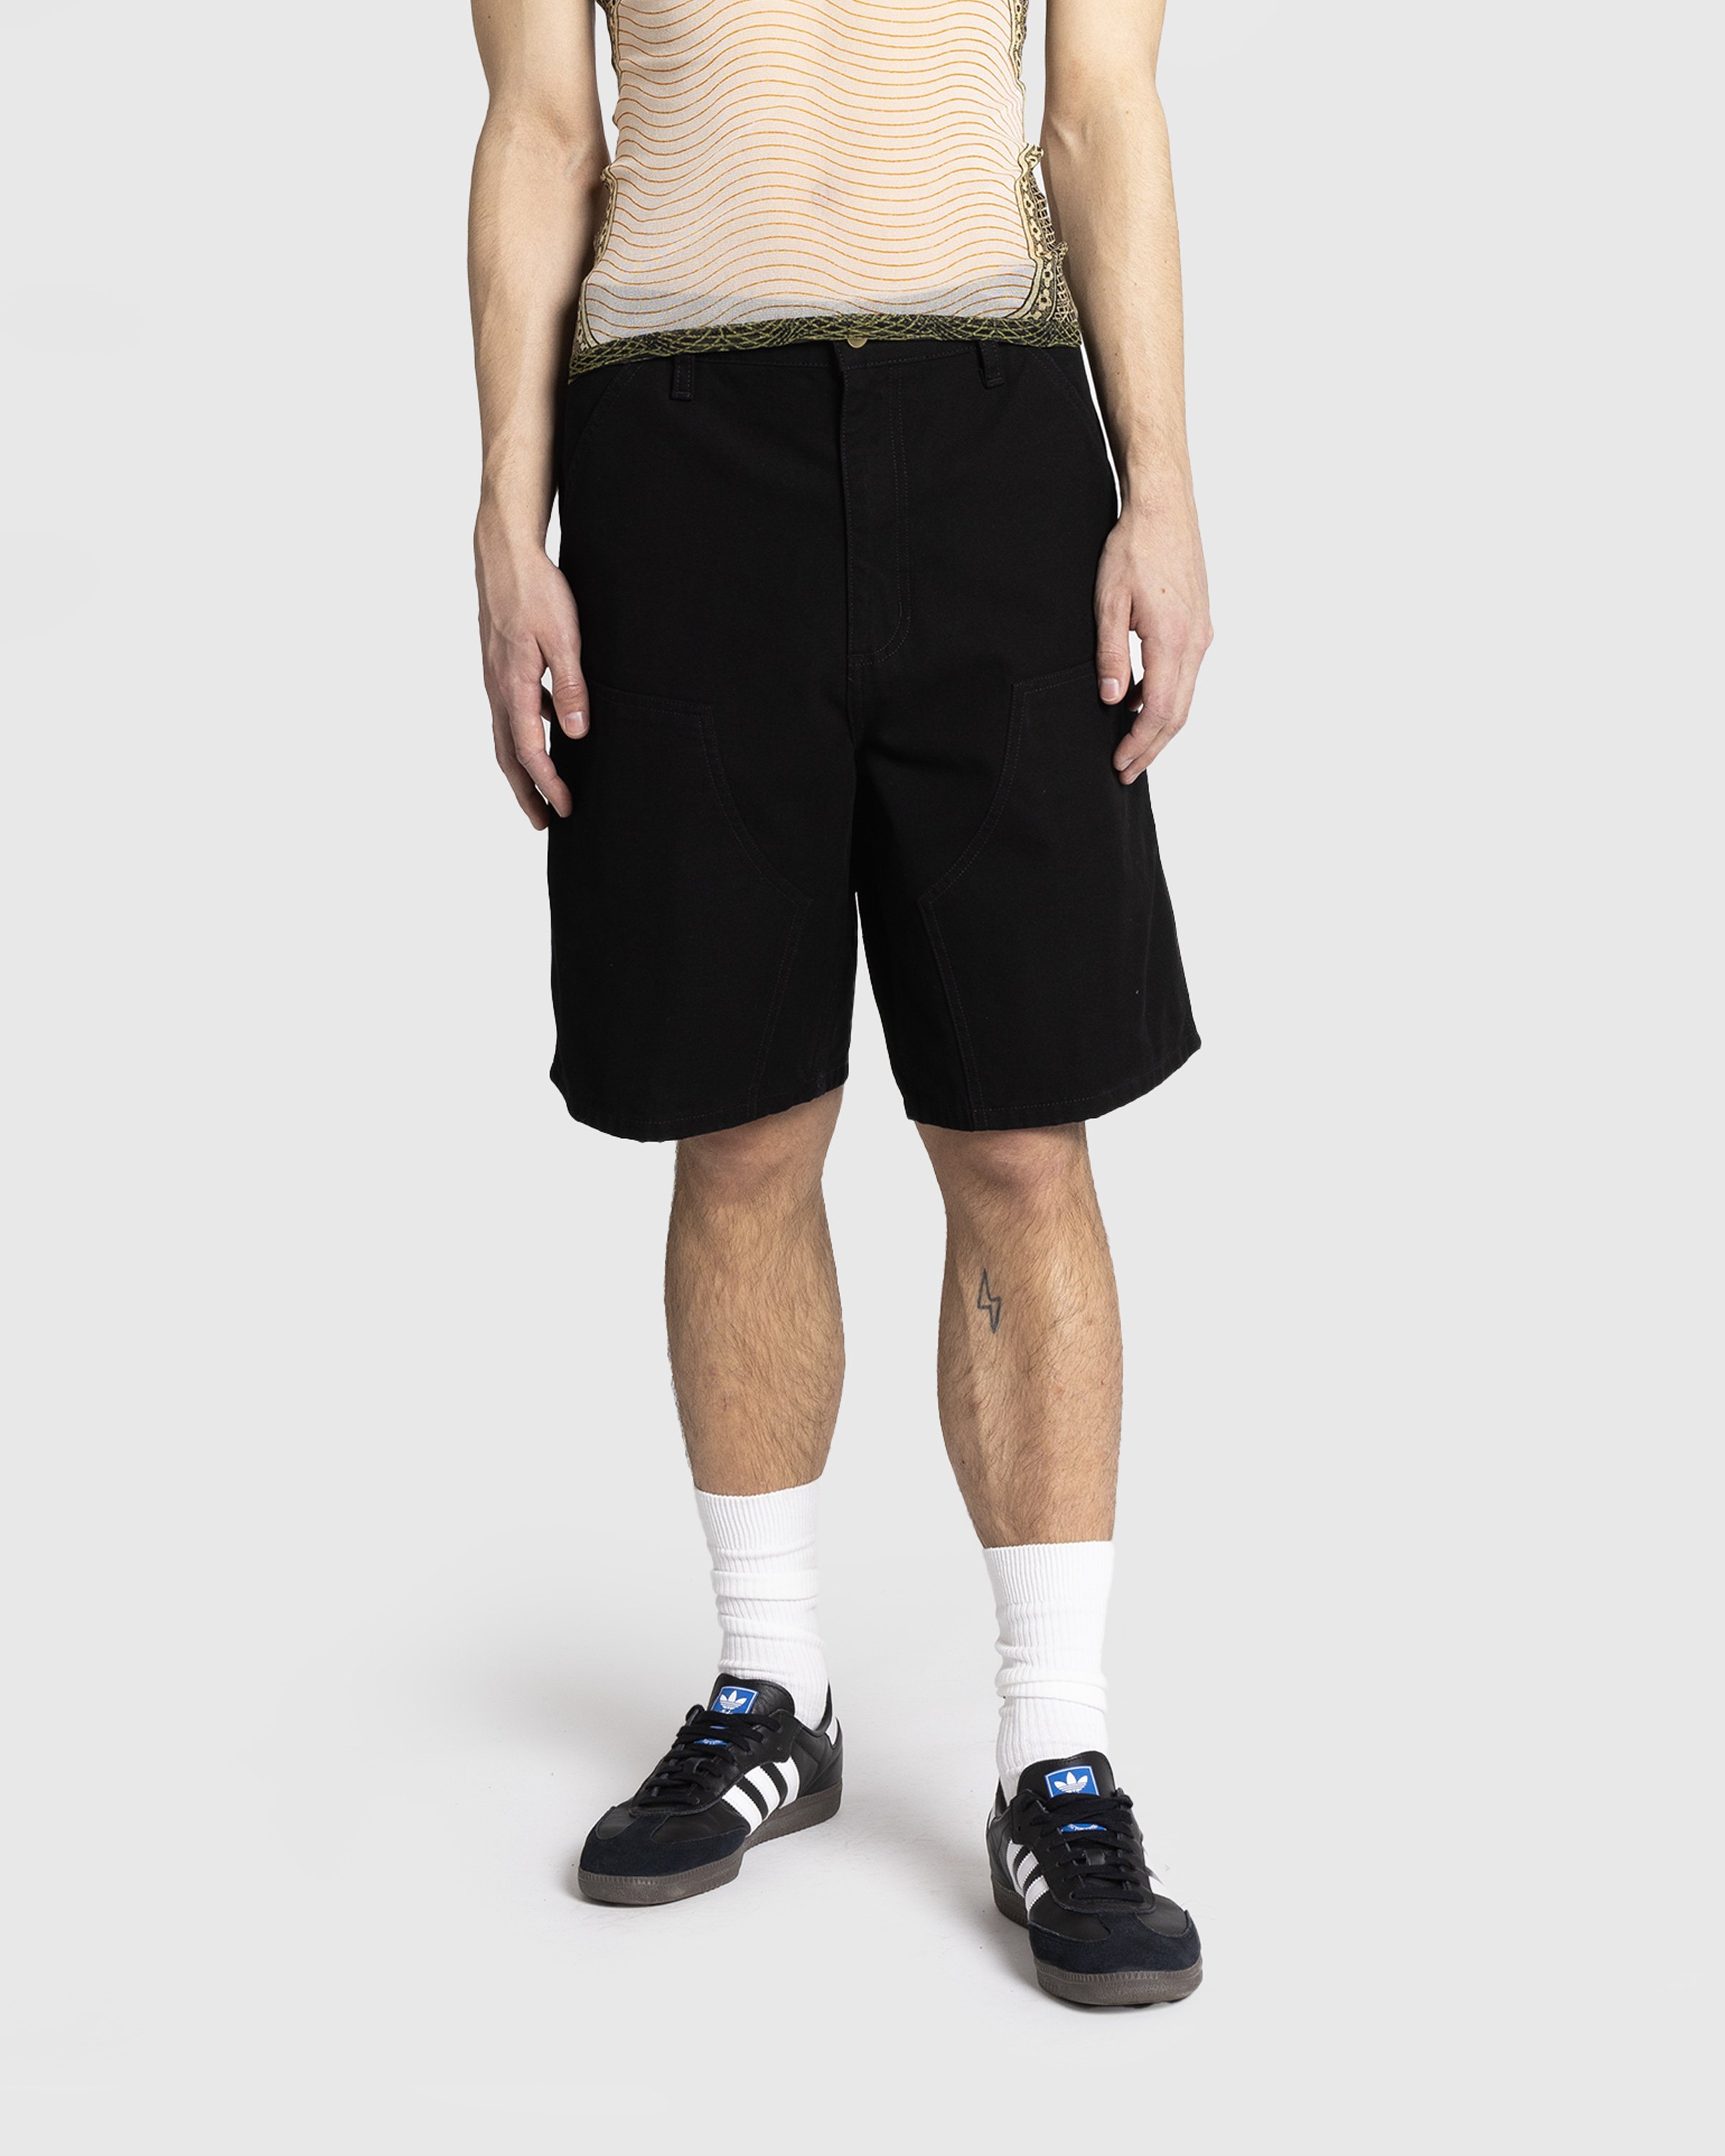 Carhartt WIP - Double Knee Short Black /rinsed - Clothing - Black - Image 2